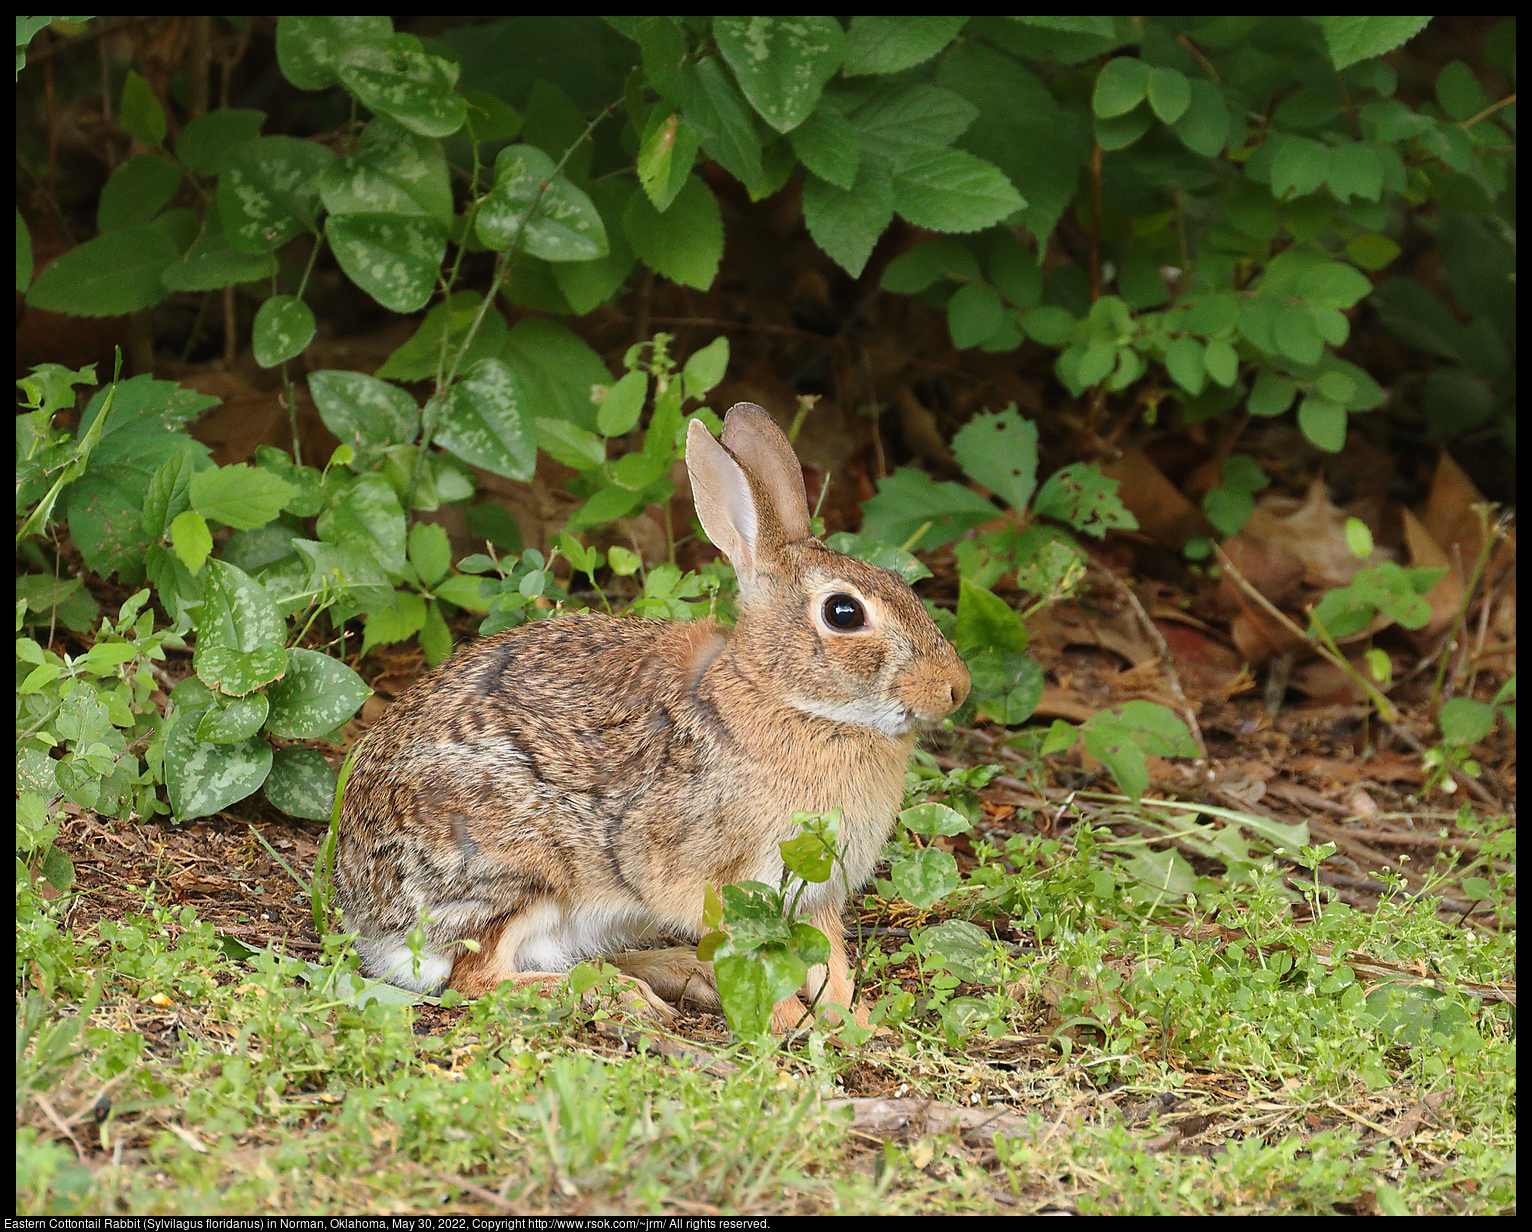 Eastern Cottontail Rabbit (Sylvilagus floridanus) in Norman, Oklahoma, May 30, 2022